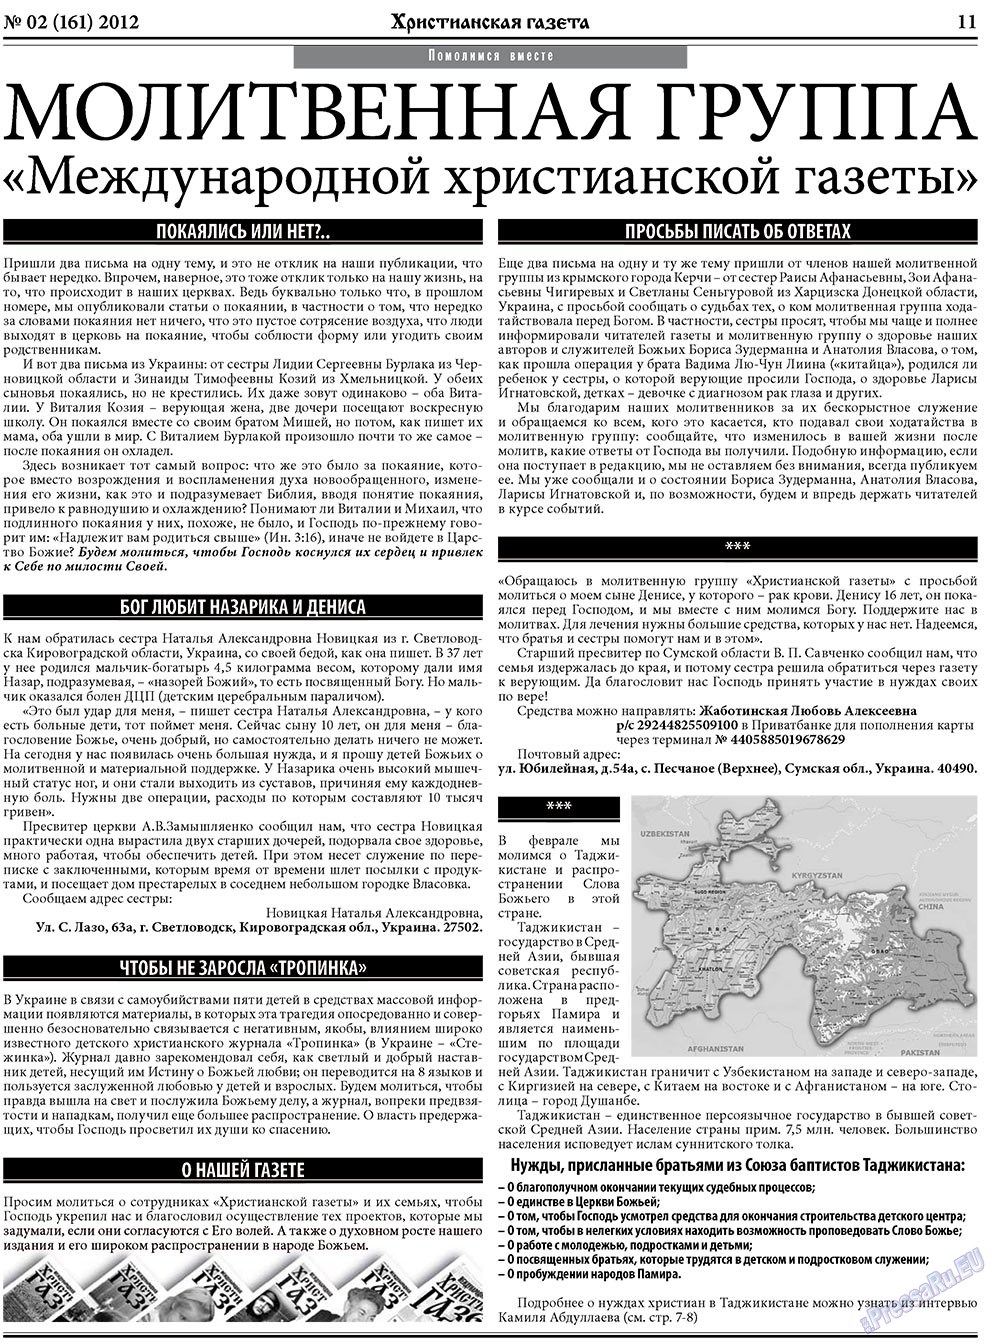 Христианская газета (газета). 2012 год, номер 2, стр. 11